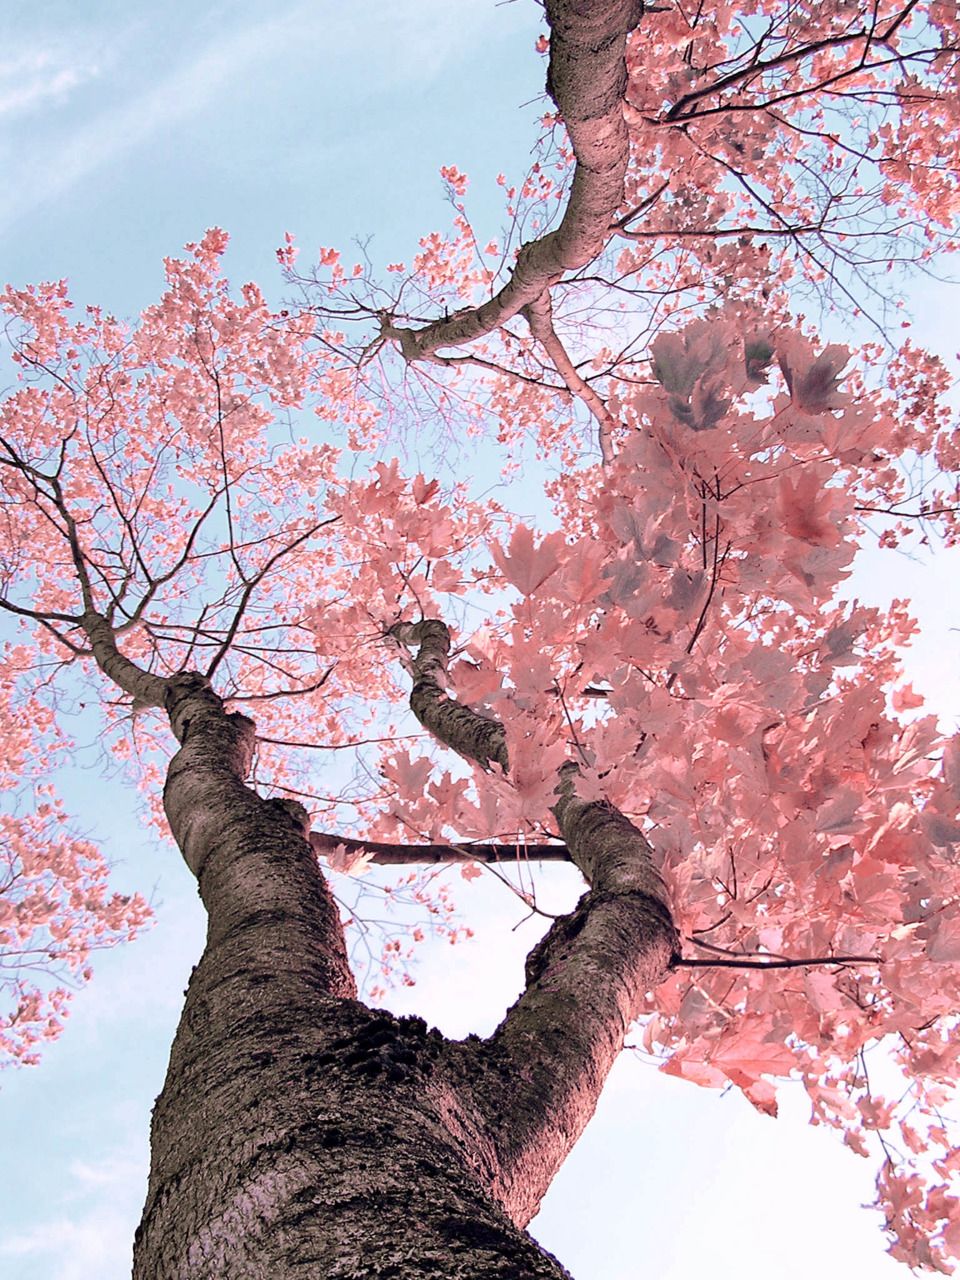 fondos-de-pantalla-arboles-en-flor-primavera-cerezo-rojo-zajura-florecidos-frutales-hd-iphone-android-smartphone-12  | Imágenes Bonitas Gratis